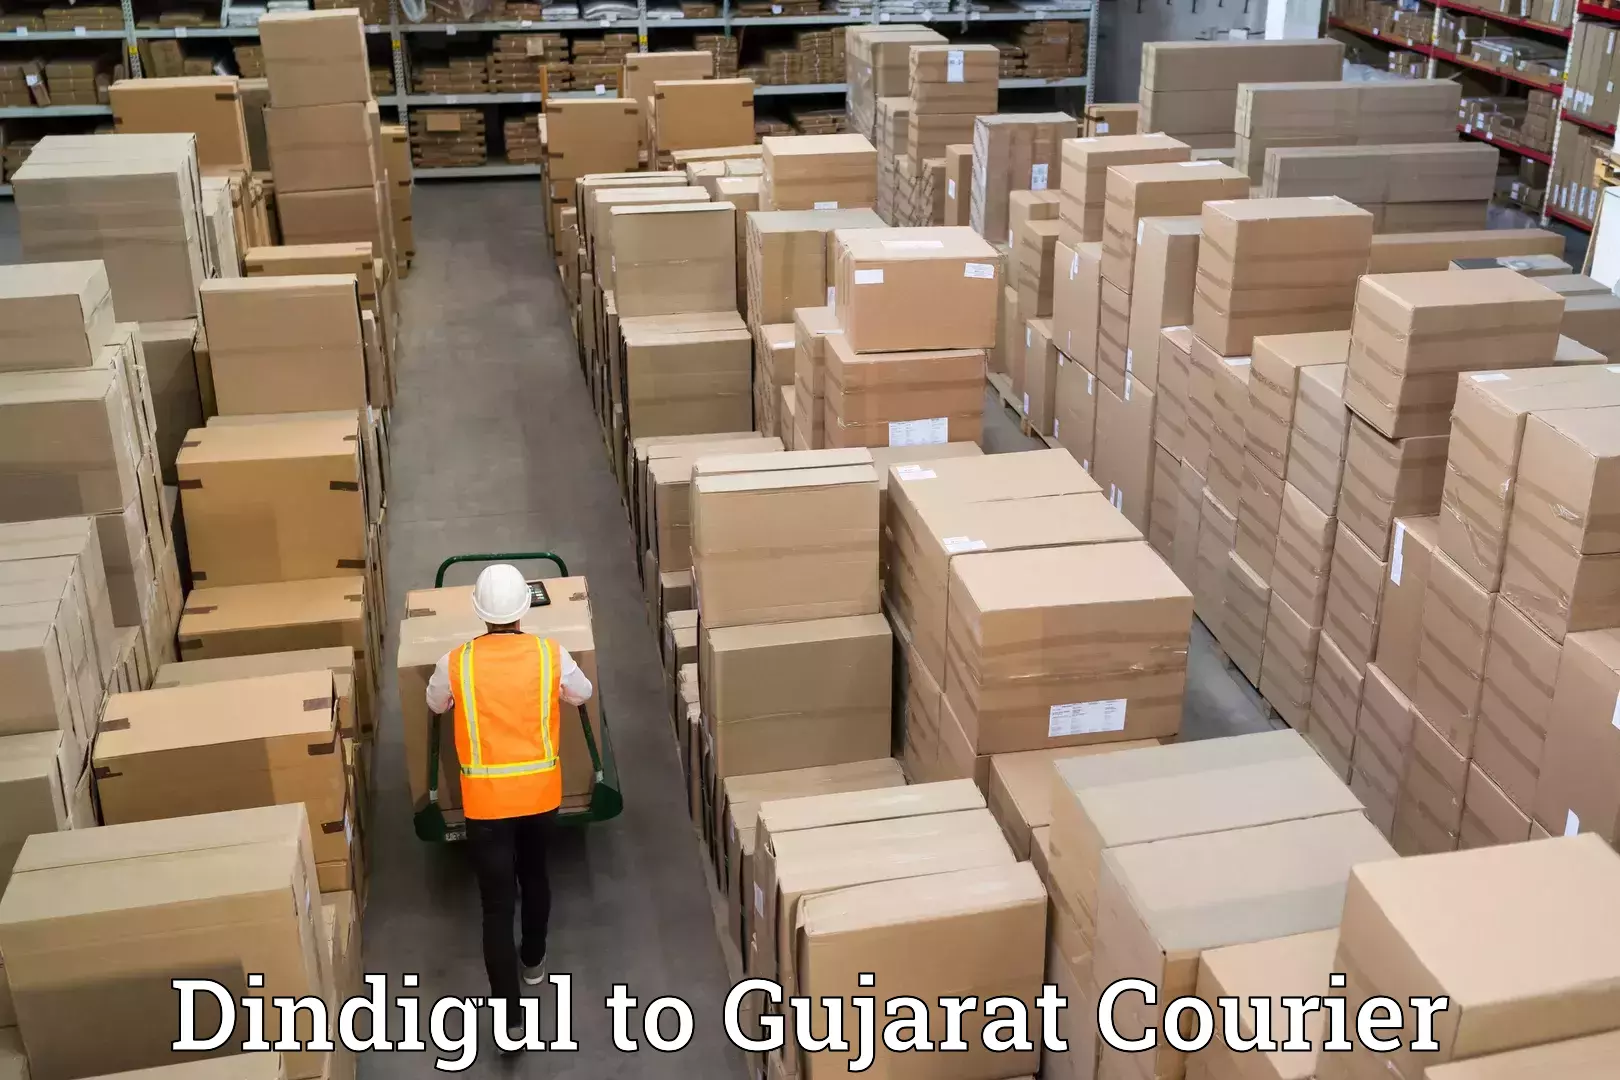 Furniture moving experts Dindigul to Gujarat